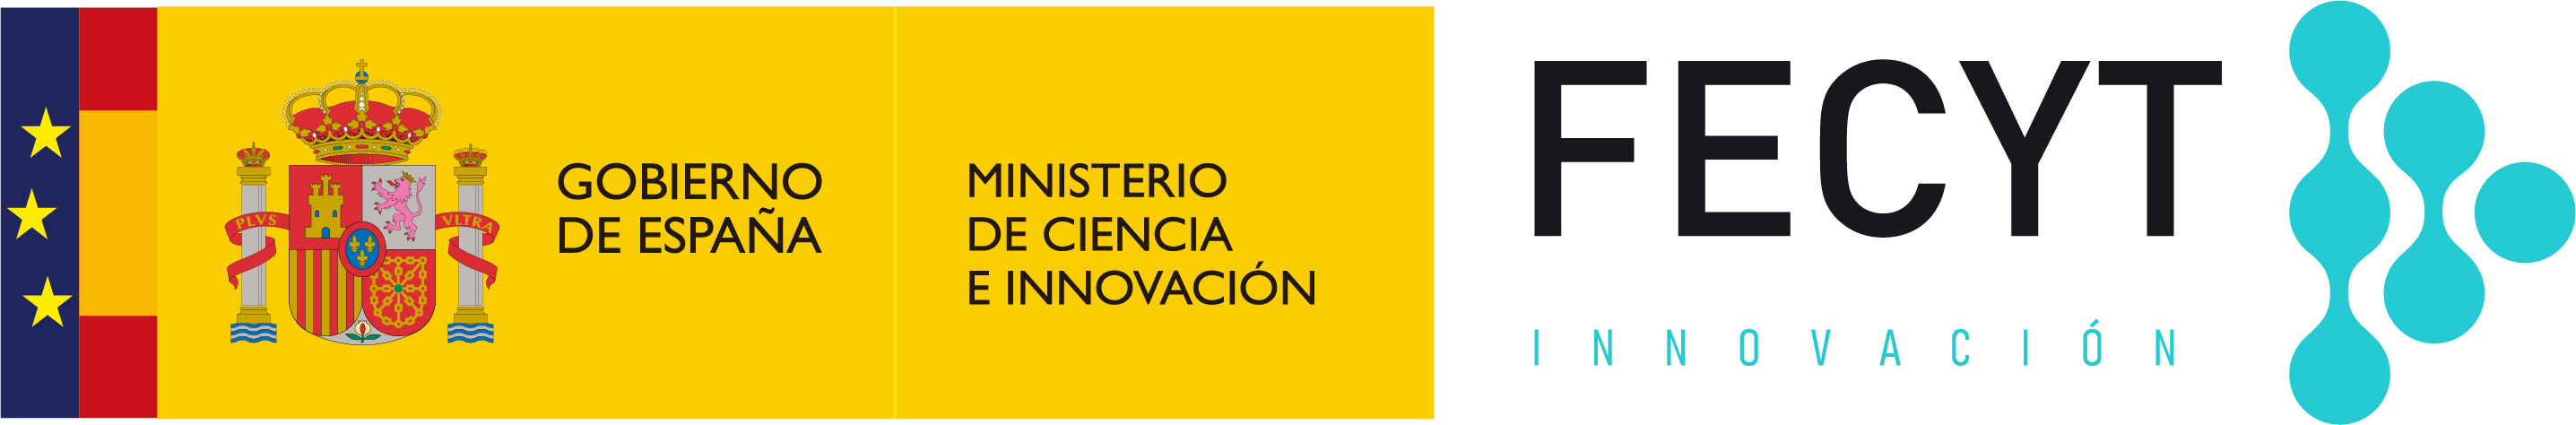 Fundació Espanyola per a la Ciència i la Tecnologia (FECYT)